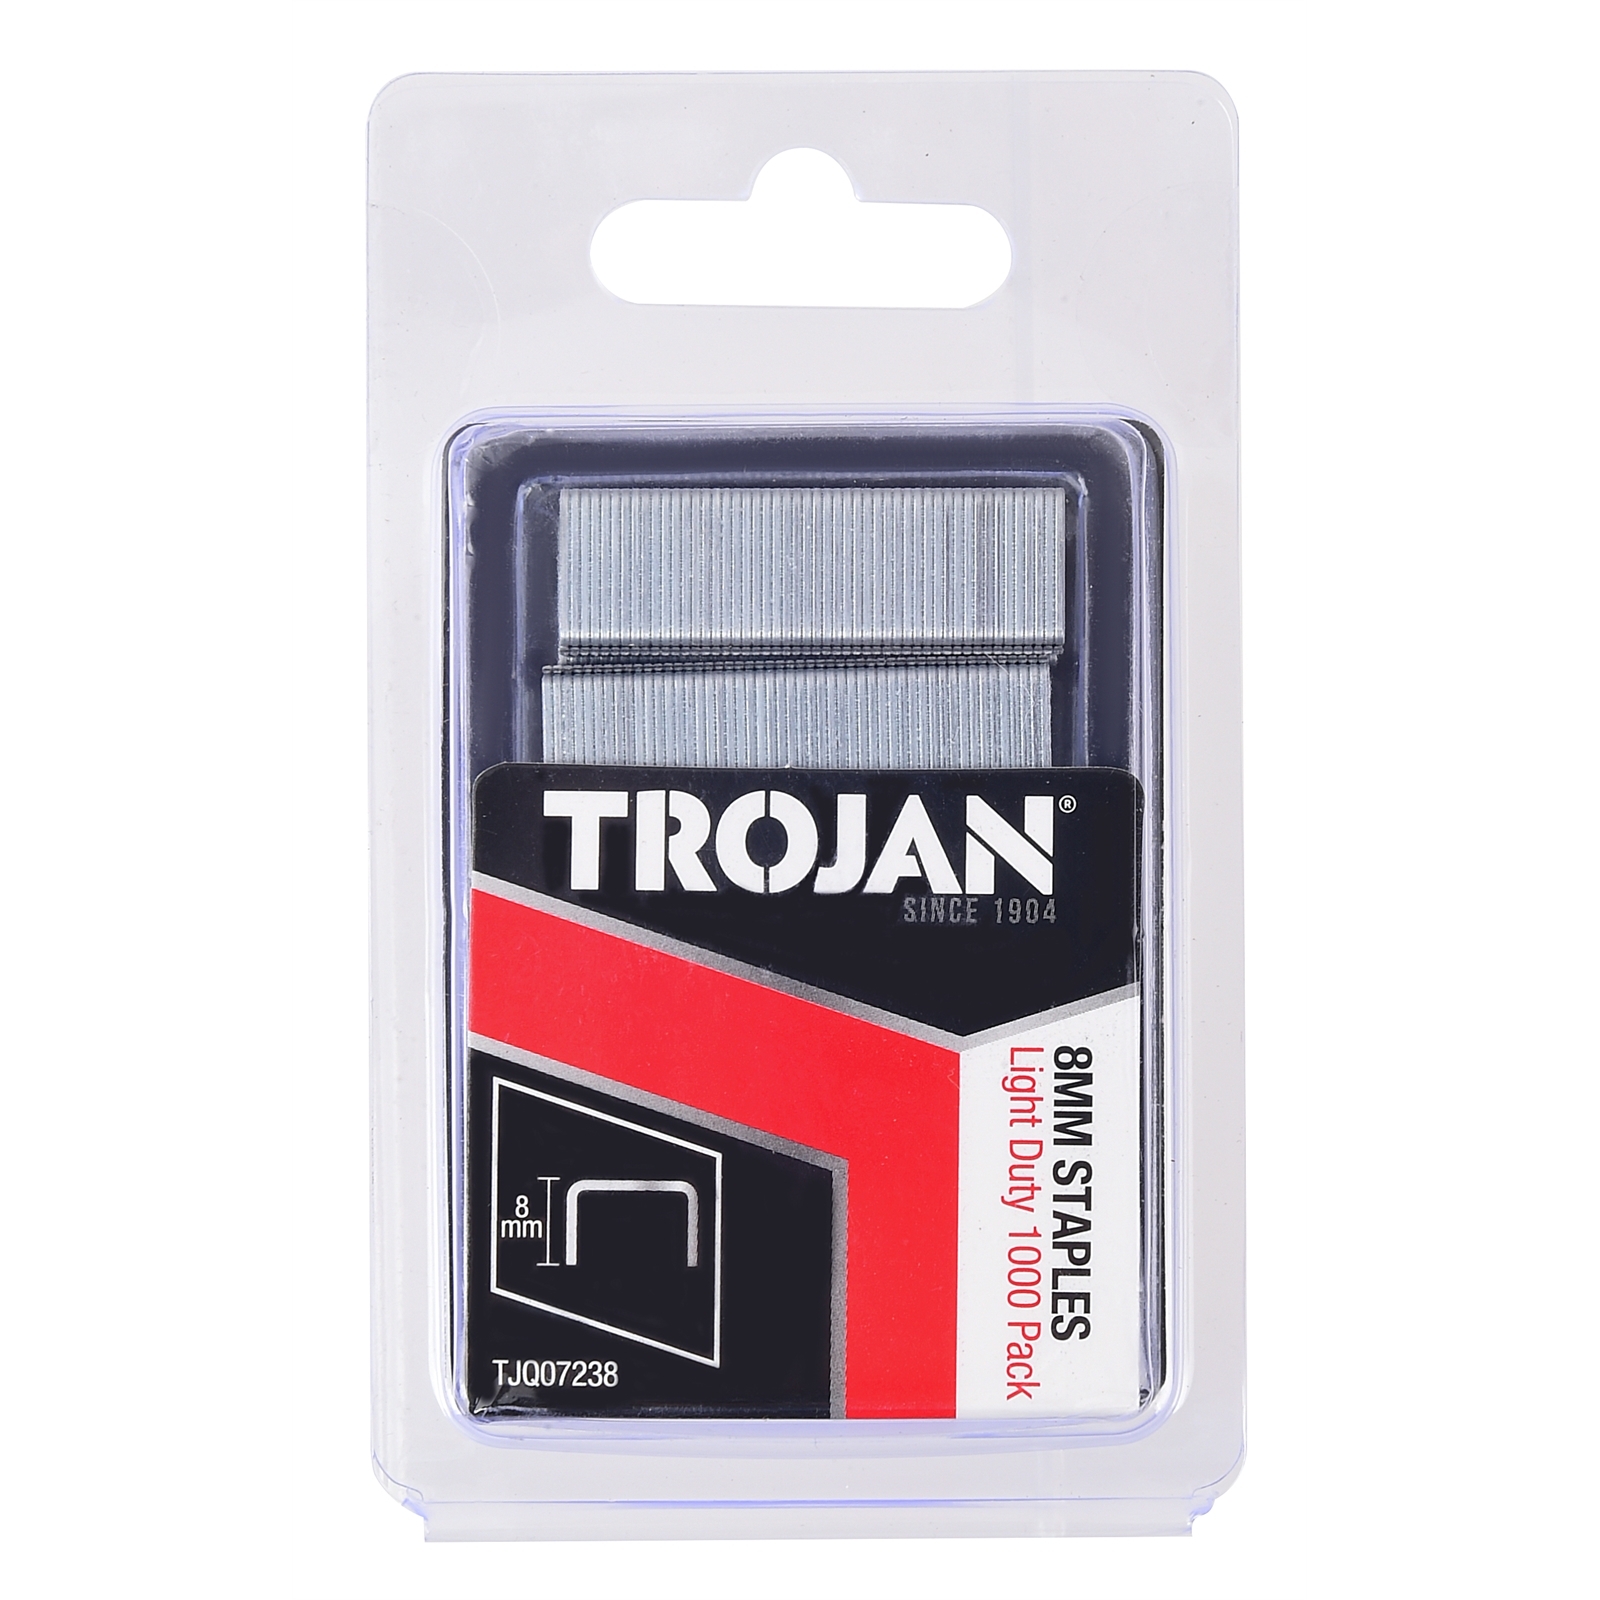 Trojan 8mm Light Duty Staples - 1000 Pack